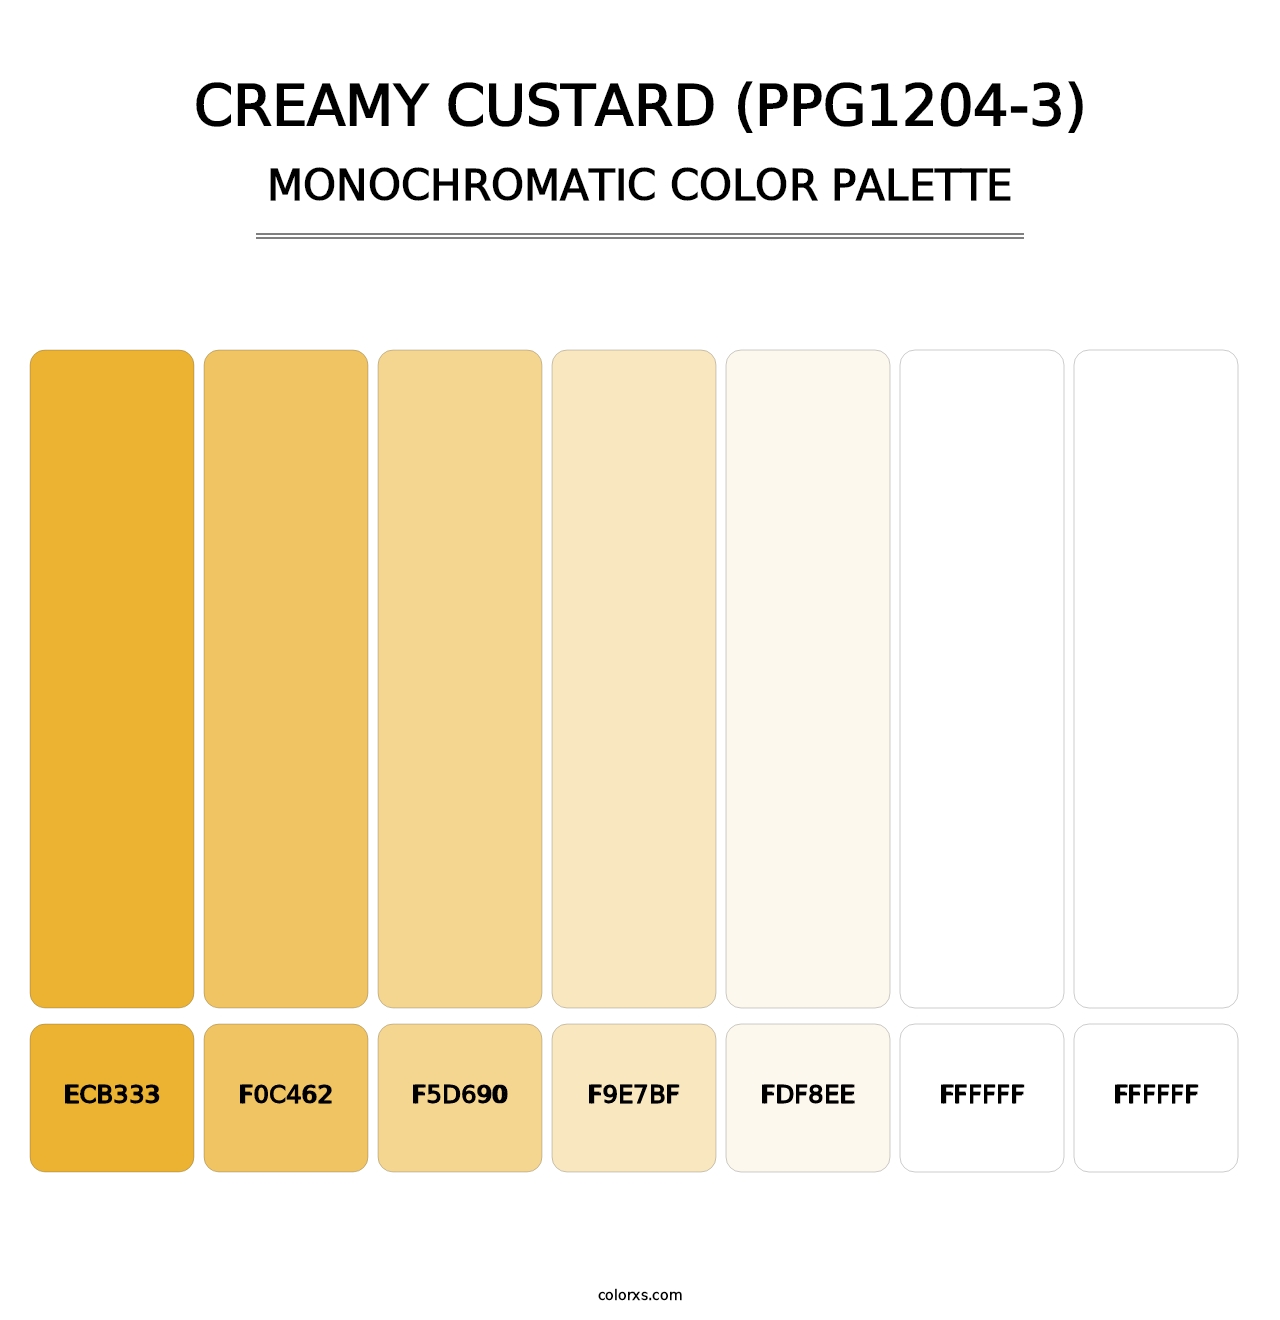 Creamy Custard (PPG1204-3) - Monochromatic Color Palette